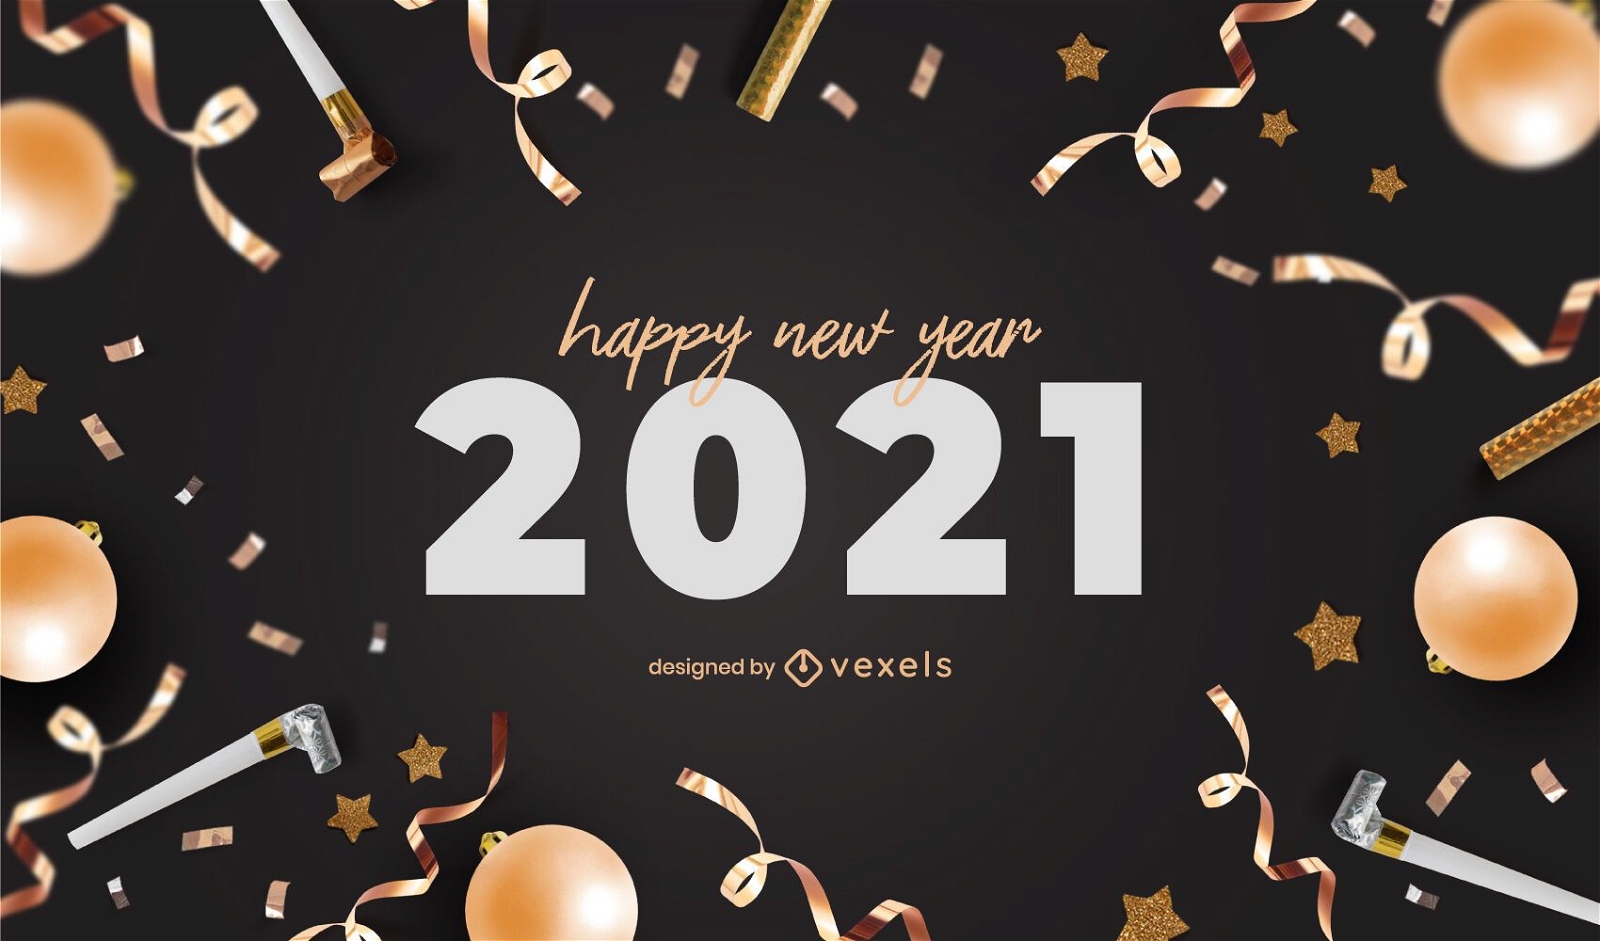 Design de plano de fundo para festa de ano novo de 2021